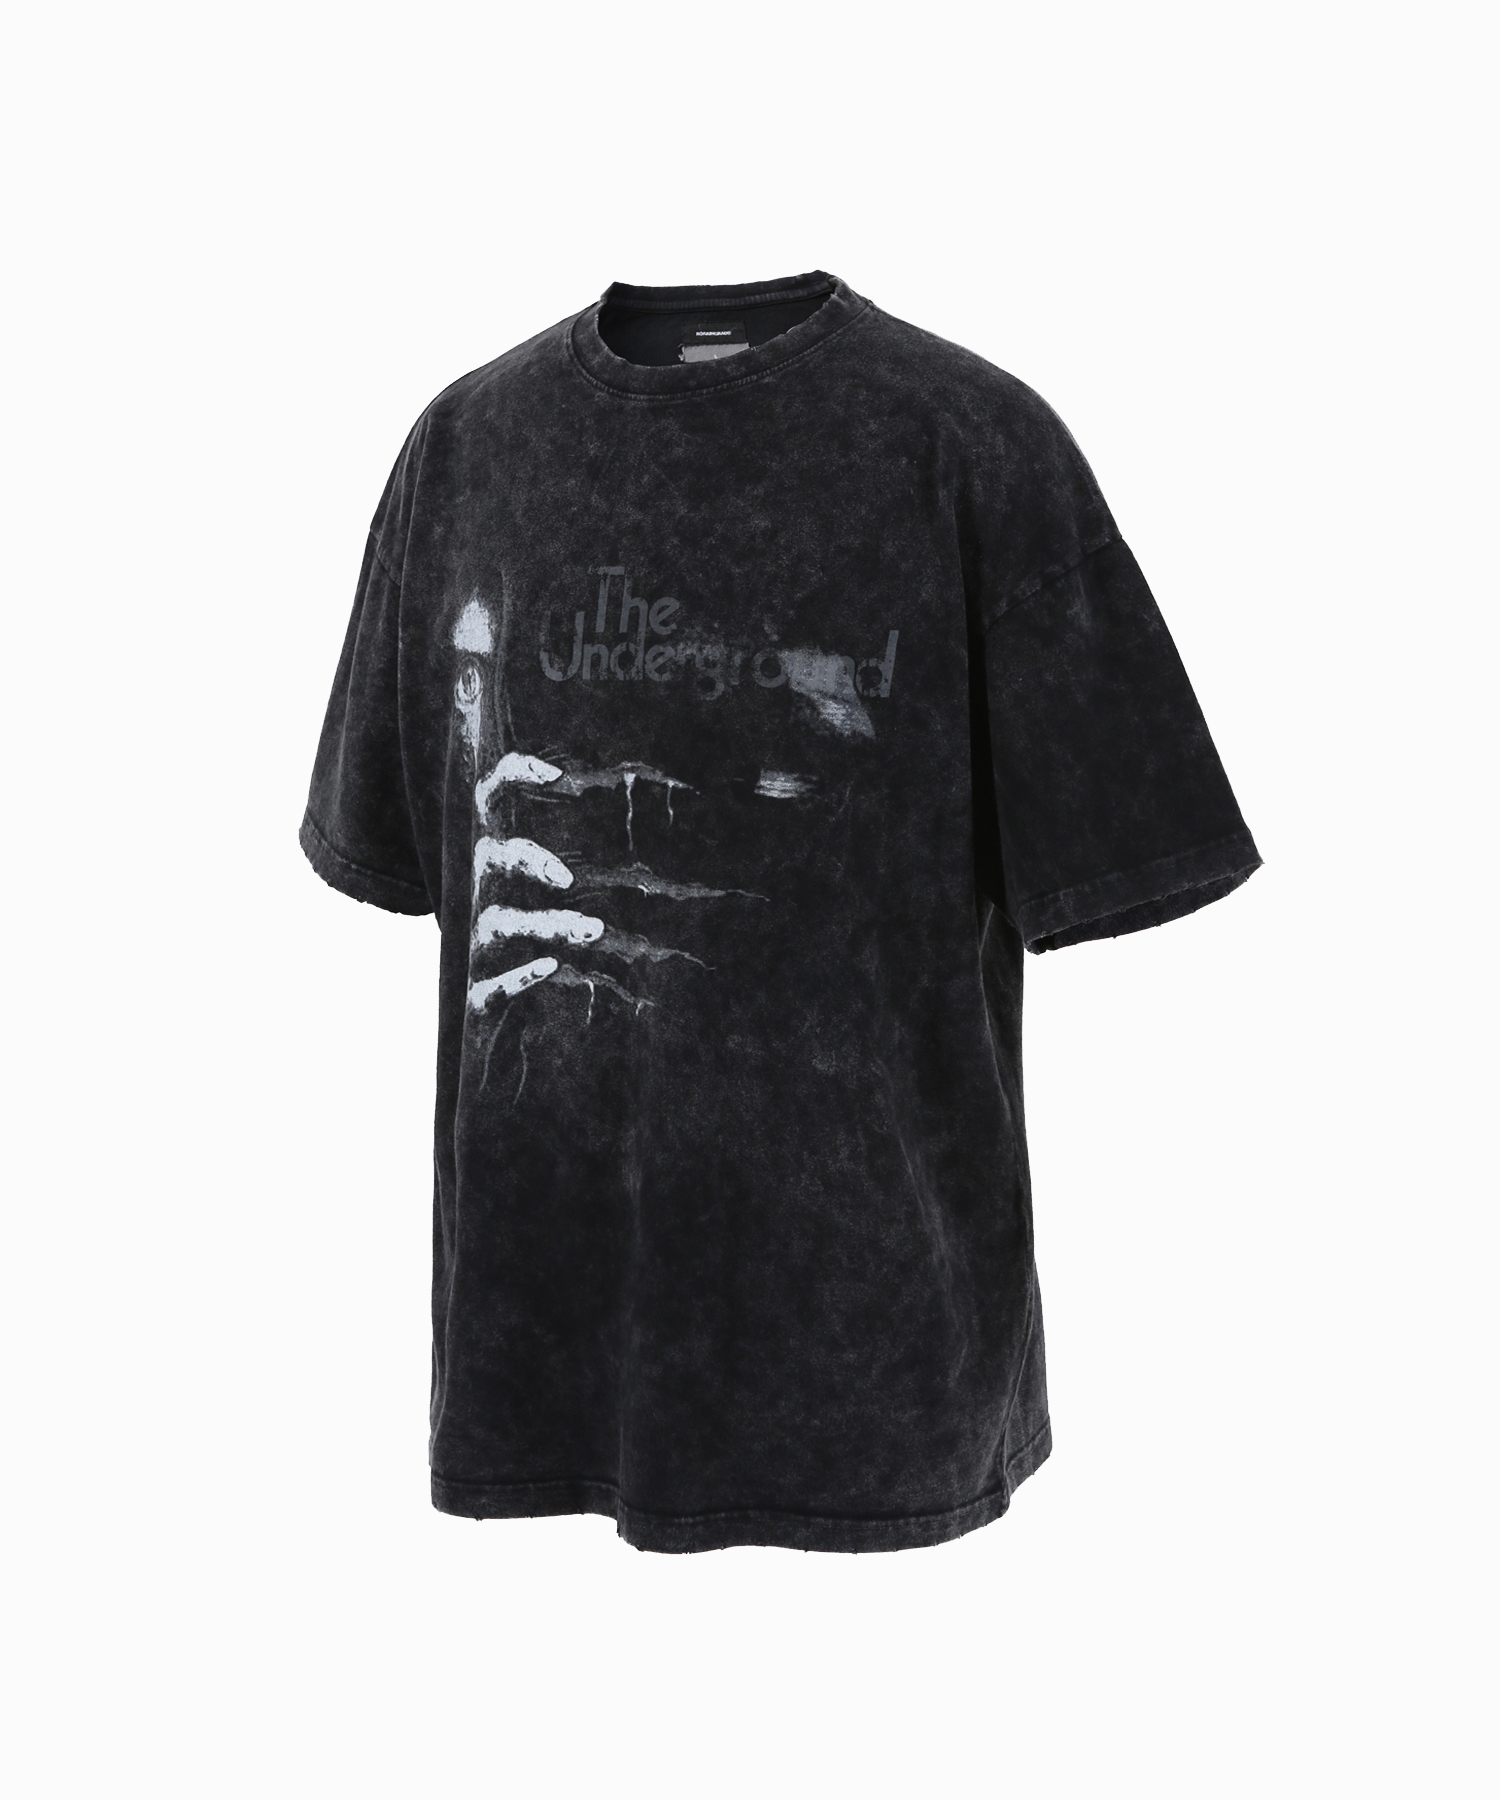 washed damage over t-shirt - 로어링라드(ROARINGRAD)